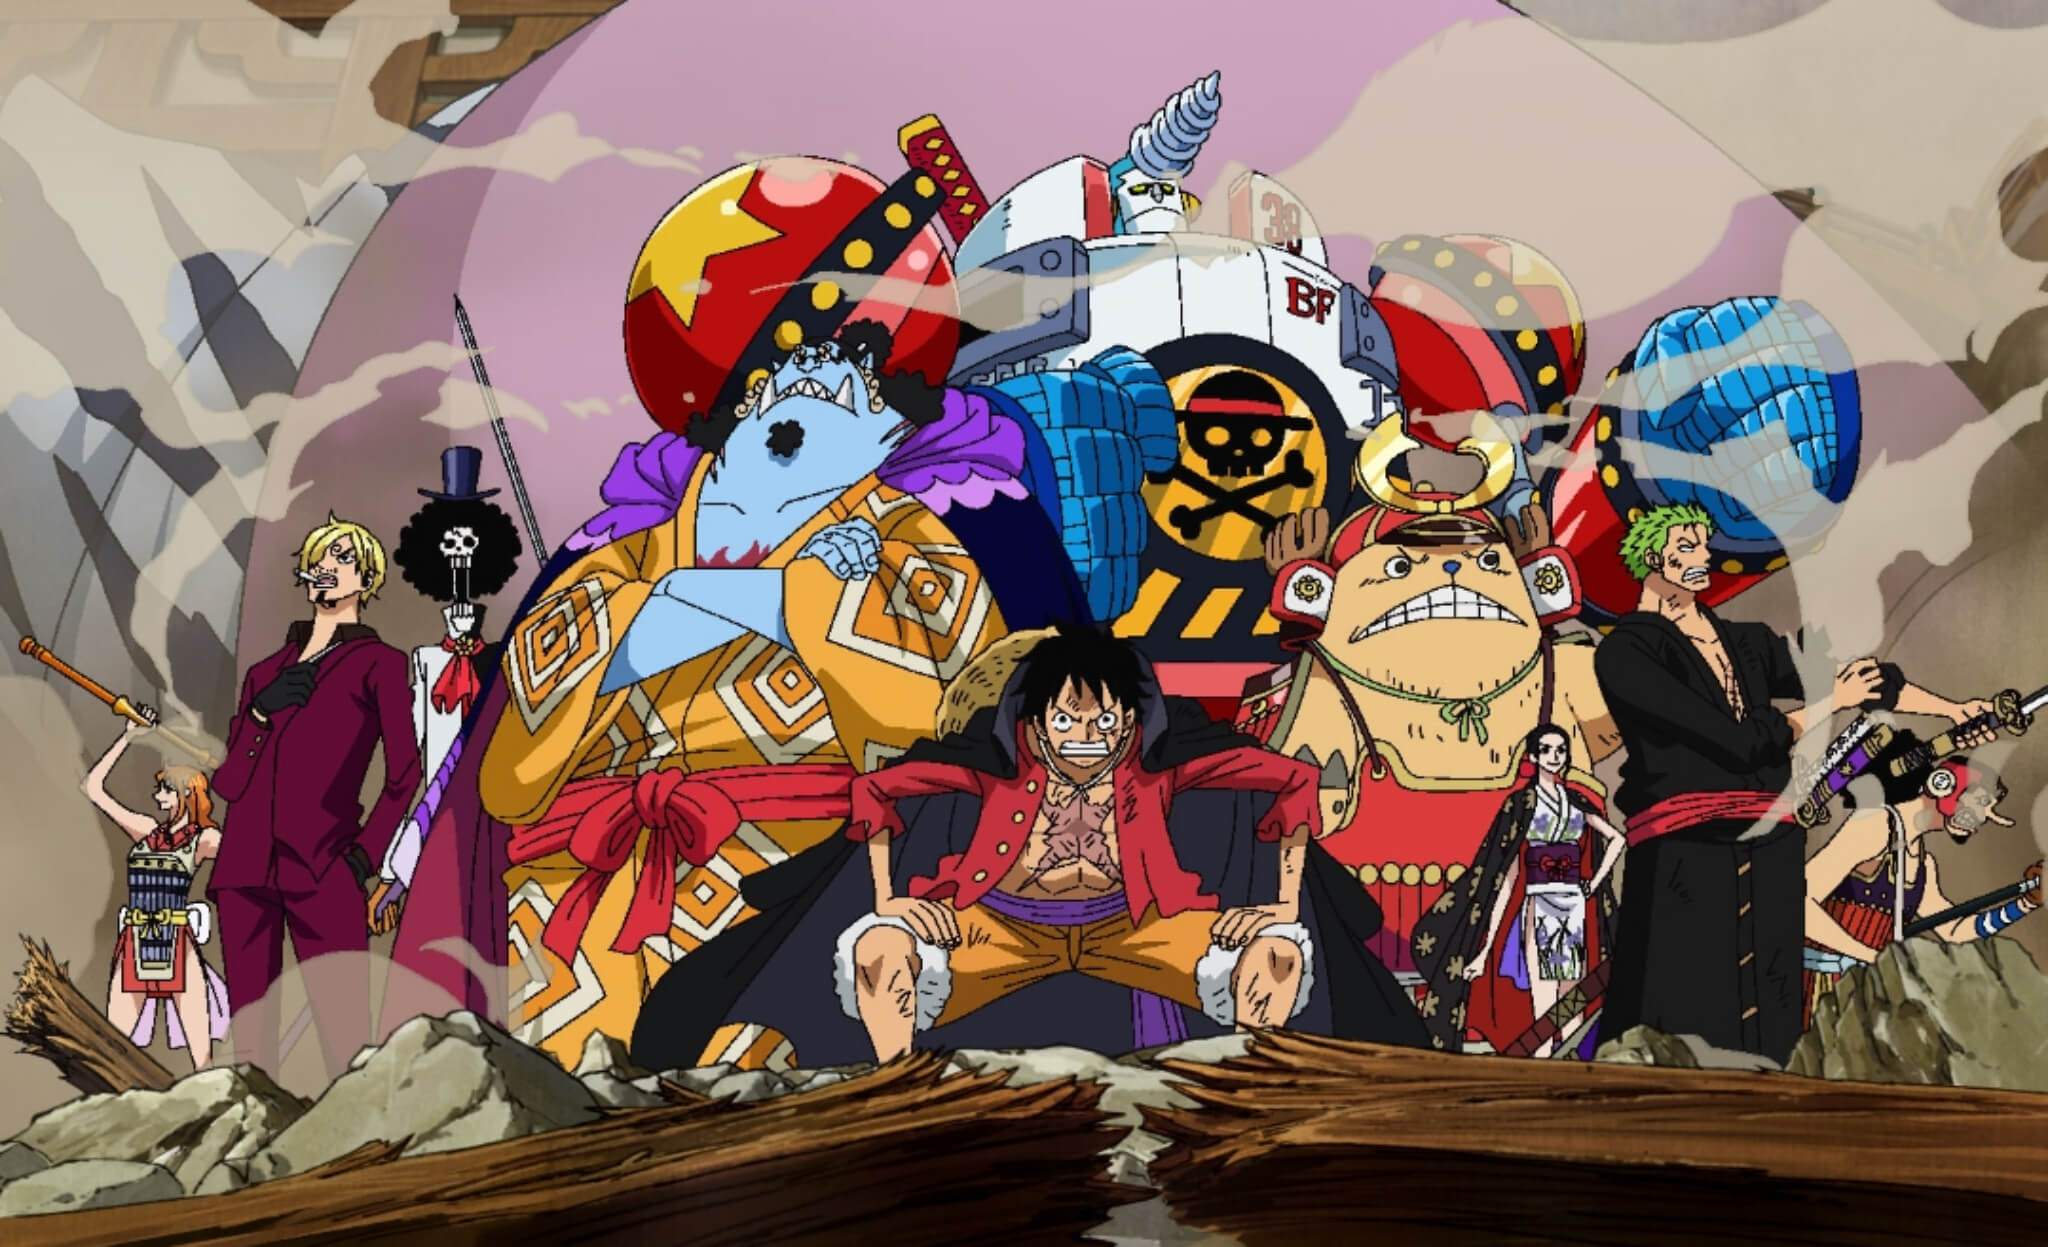 Siapa Saja Kru yang Pernah Keluar dari Kelompok Bajak Laut Topi Jerami di One Piece?